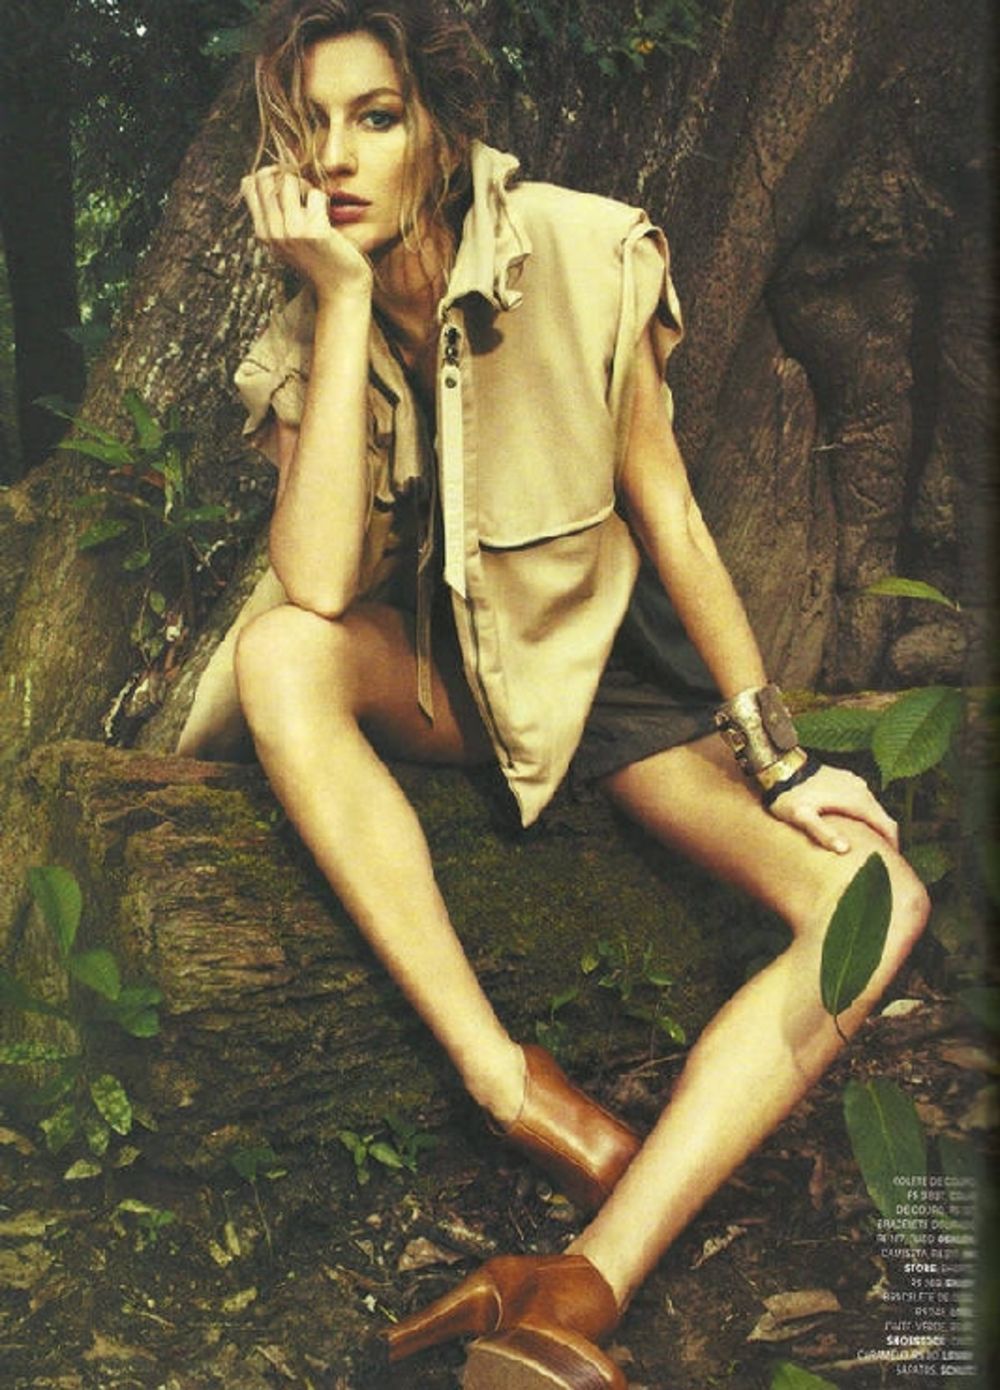 Supermodel Žizel Bundšen osvanula je na naslovnici brazilskog izdanja magazina Vogue. Tridesetogodišnja lepotica je u ovom editorijalu pokazala da se baš kako u urbanoj džungli visoke mode, podjednako dobro snalazi i u divljem ambijentu amazonske prašume i net